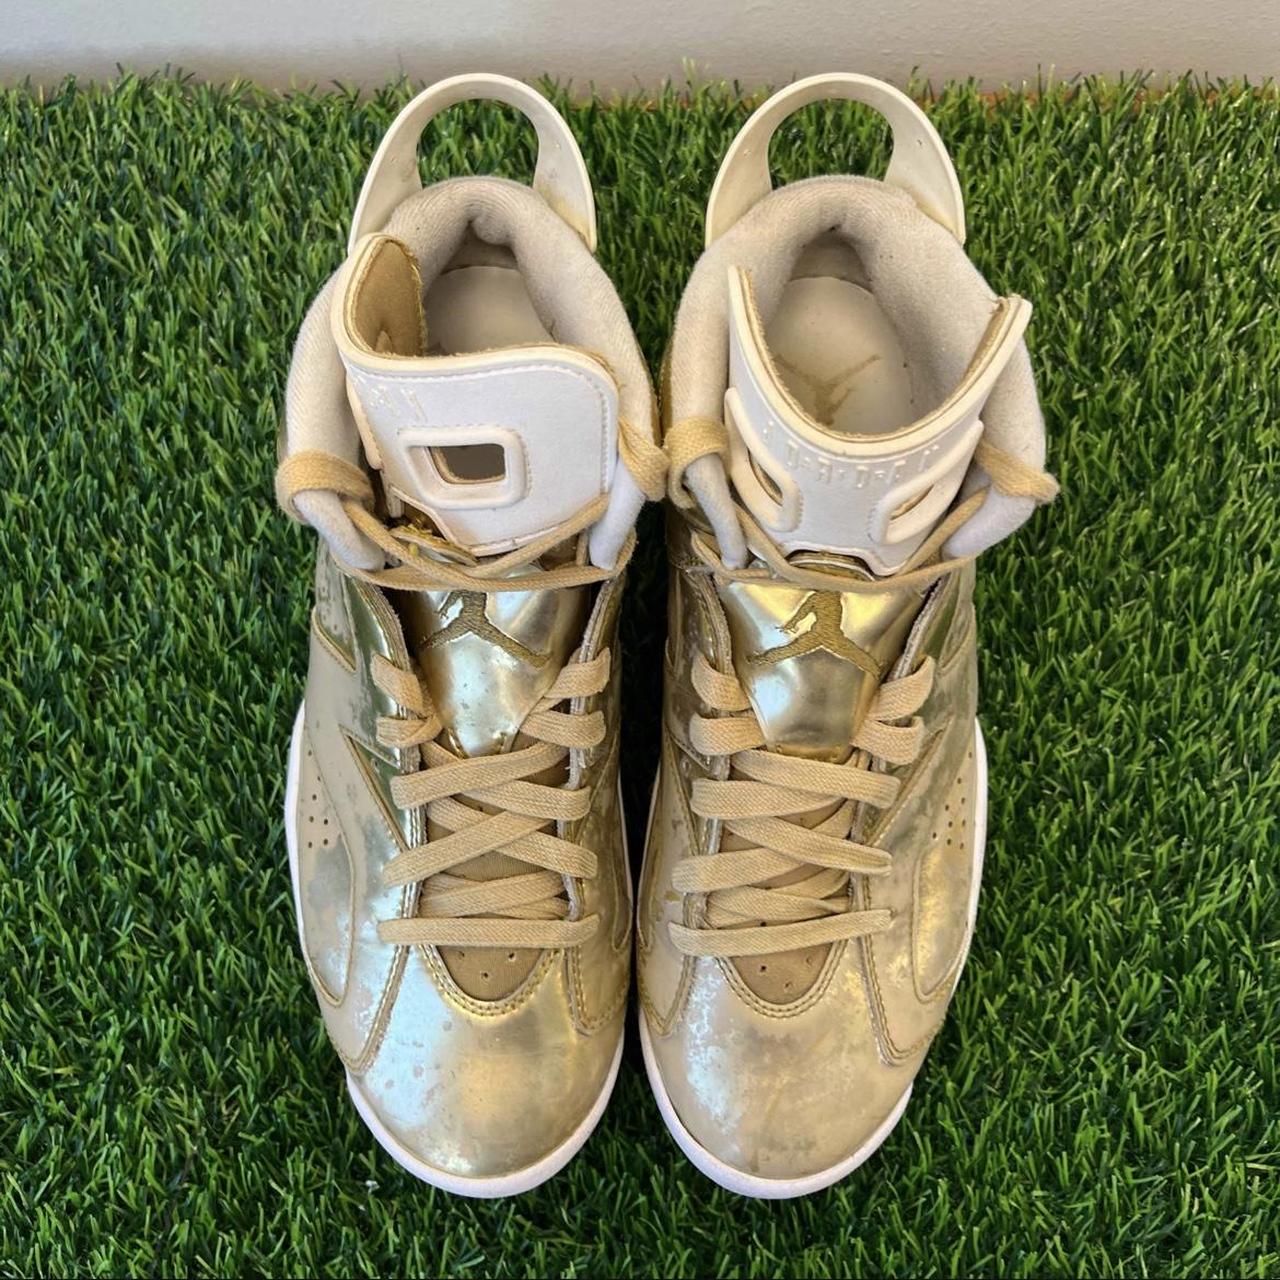 Nike Air Jordan 6 VI Retro Pinnacle Metallic Gold... - Depop